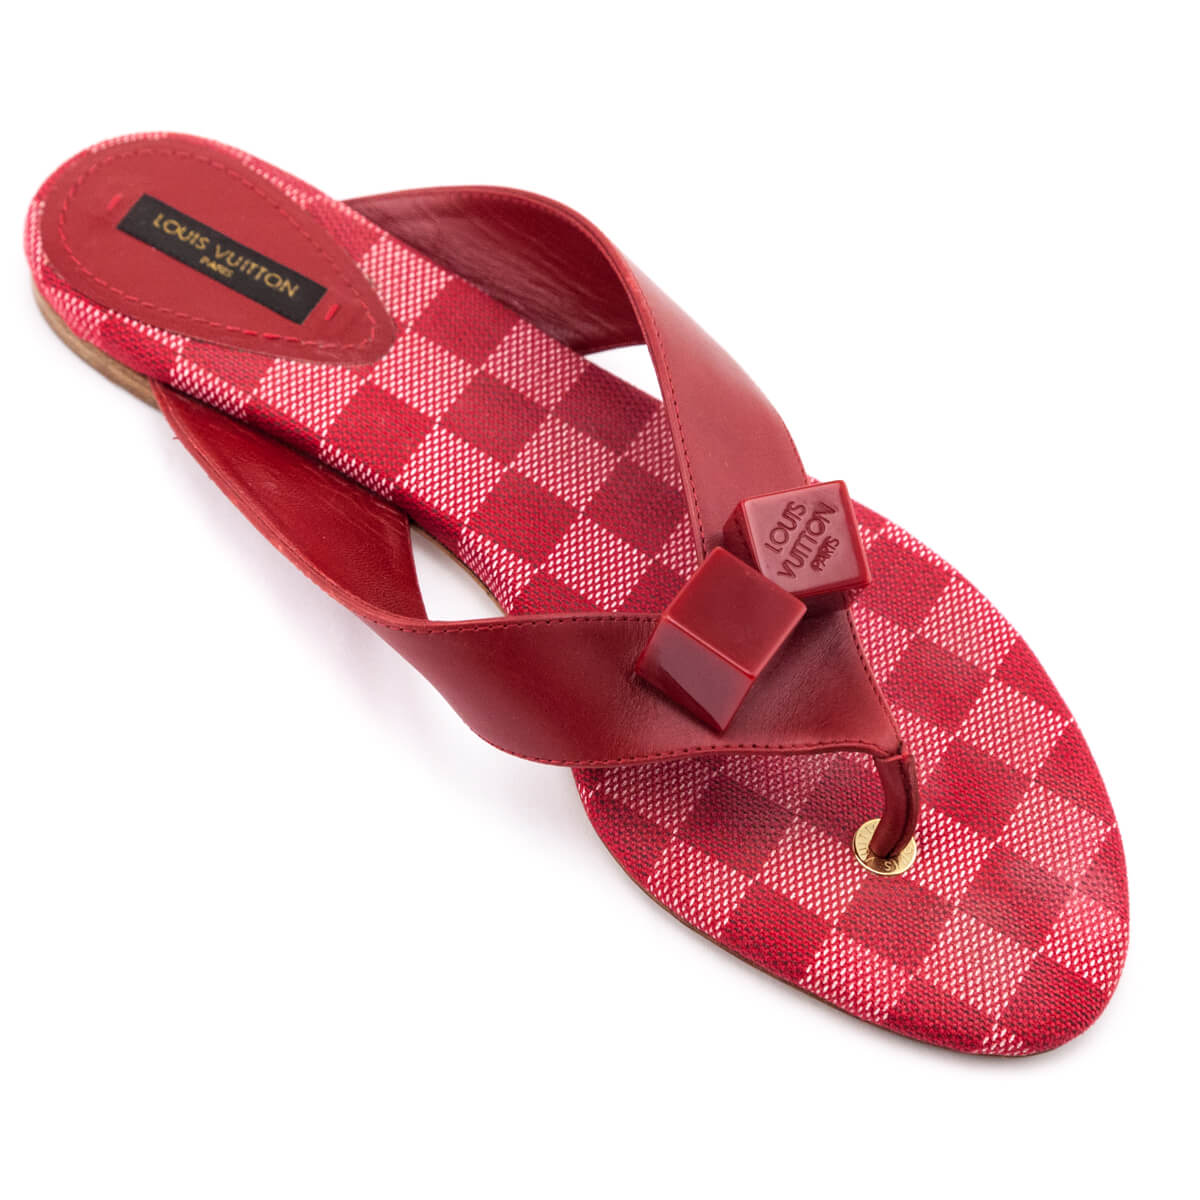 Louis Vuitton Damier Couleur Carmine Flip Flop Sandals Size US 11 | EU 41 - Love that Bag etc - Preowned Authentic Designer Handbags & Preloved Fashions